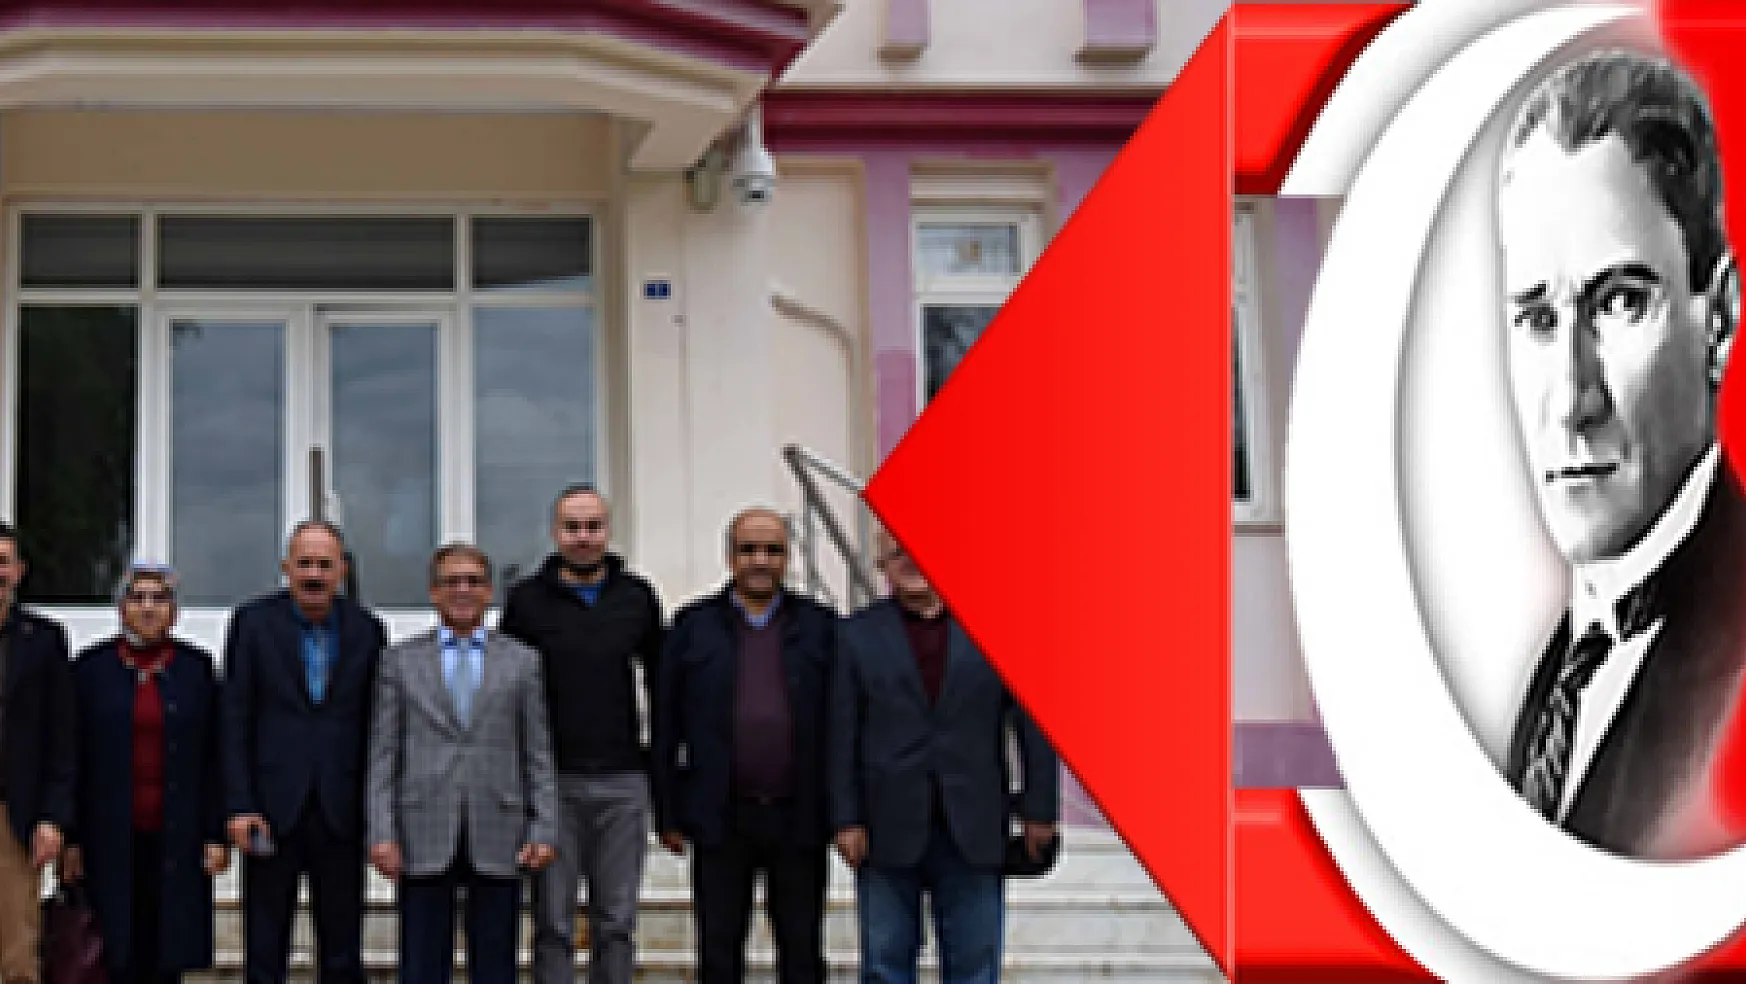 Fethiye Belediye Başkanı Behçet Saatcı'nın kardeşi Prof. Dr. Mustafa Saatcı, Muğla Üniversitesi Fethiye Ziraat Fakültesi'ne atandı.